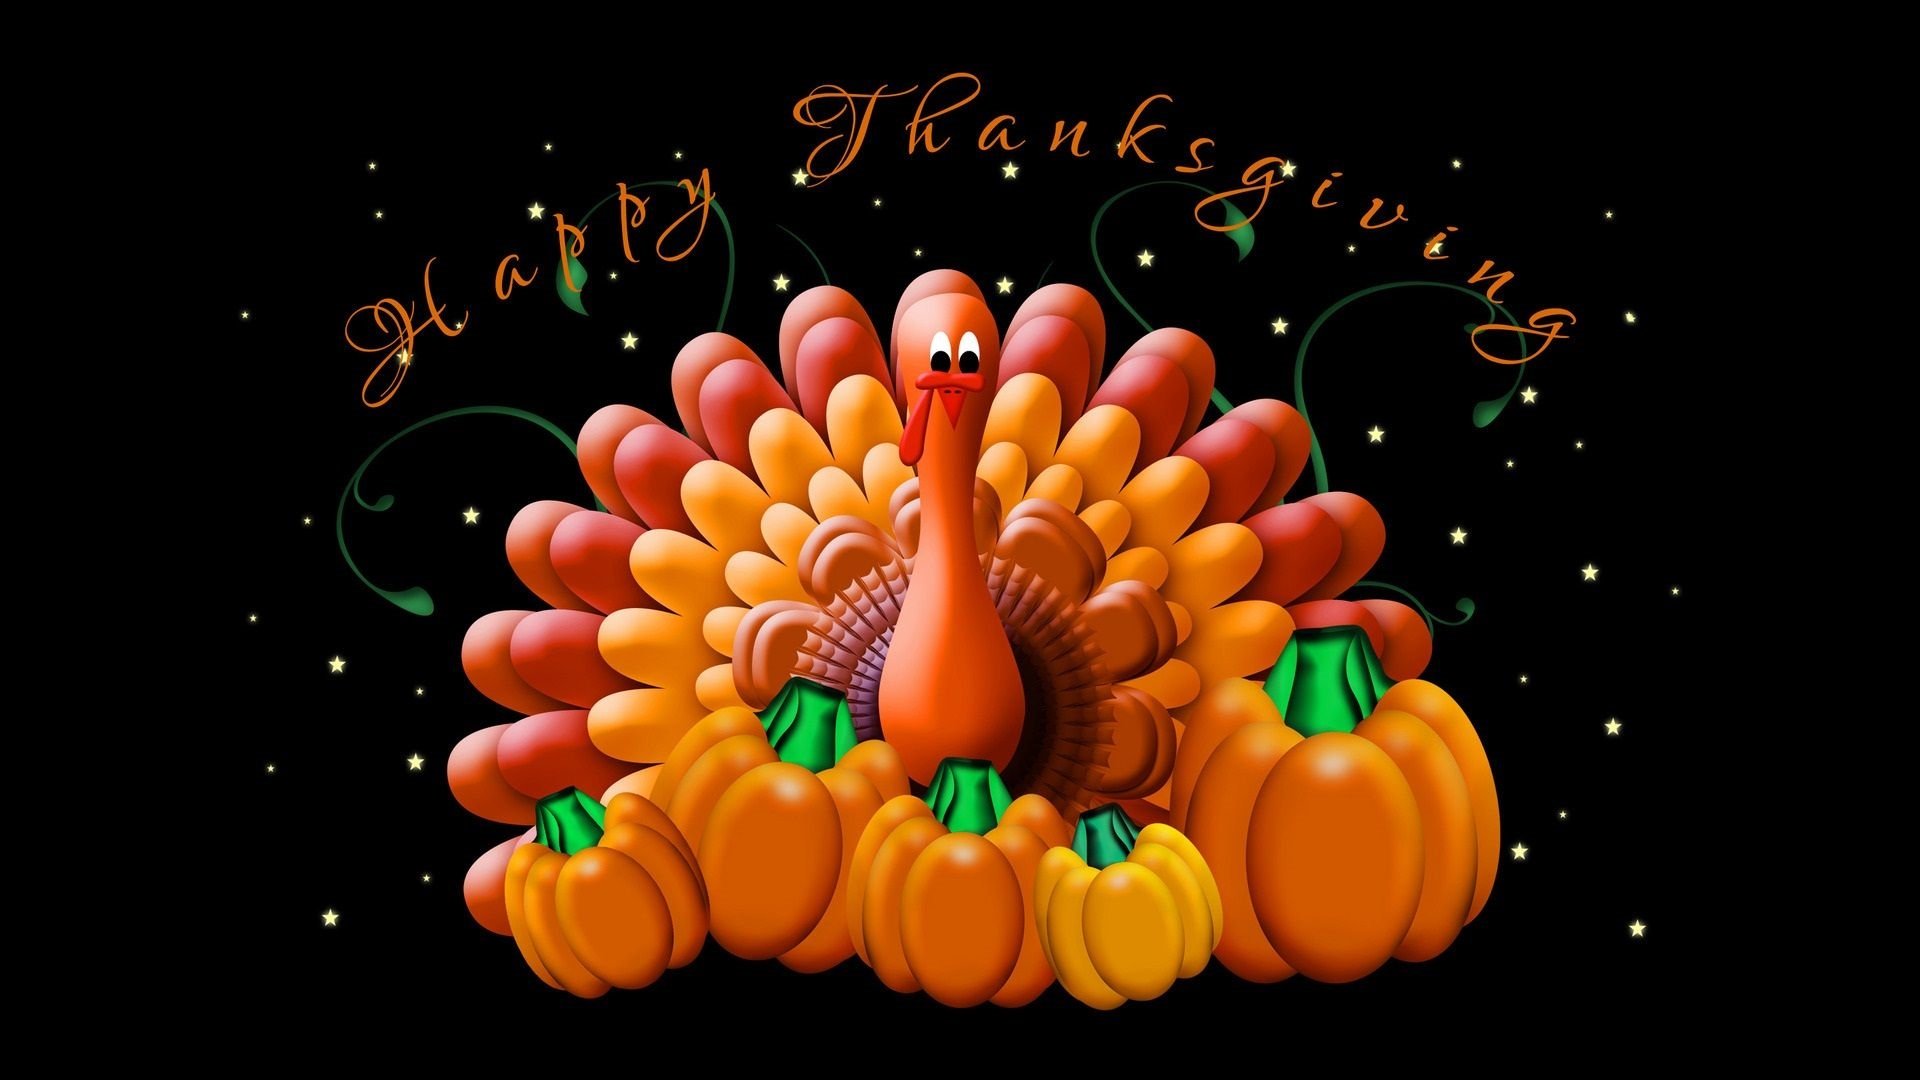 Thanksgiving Wallpaper Image